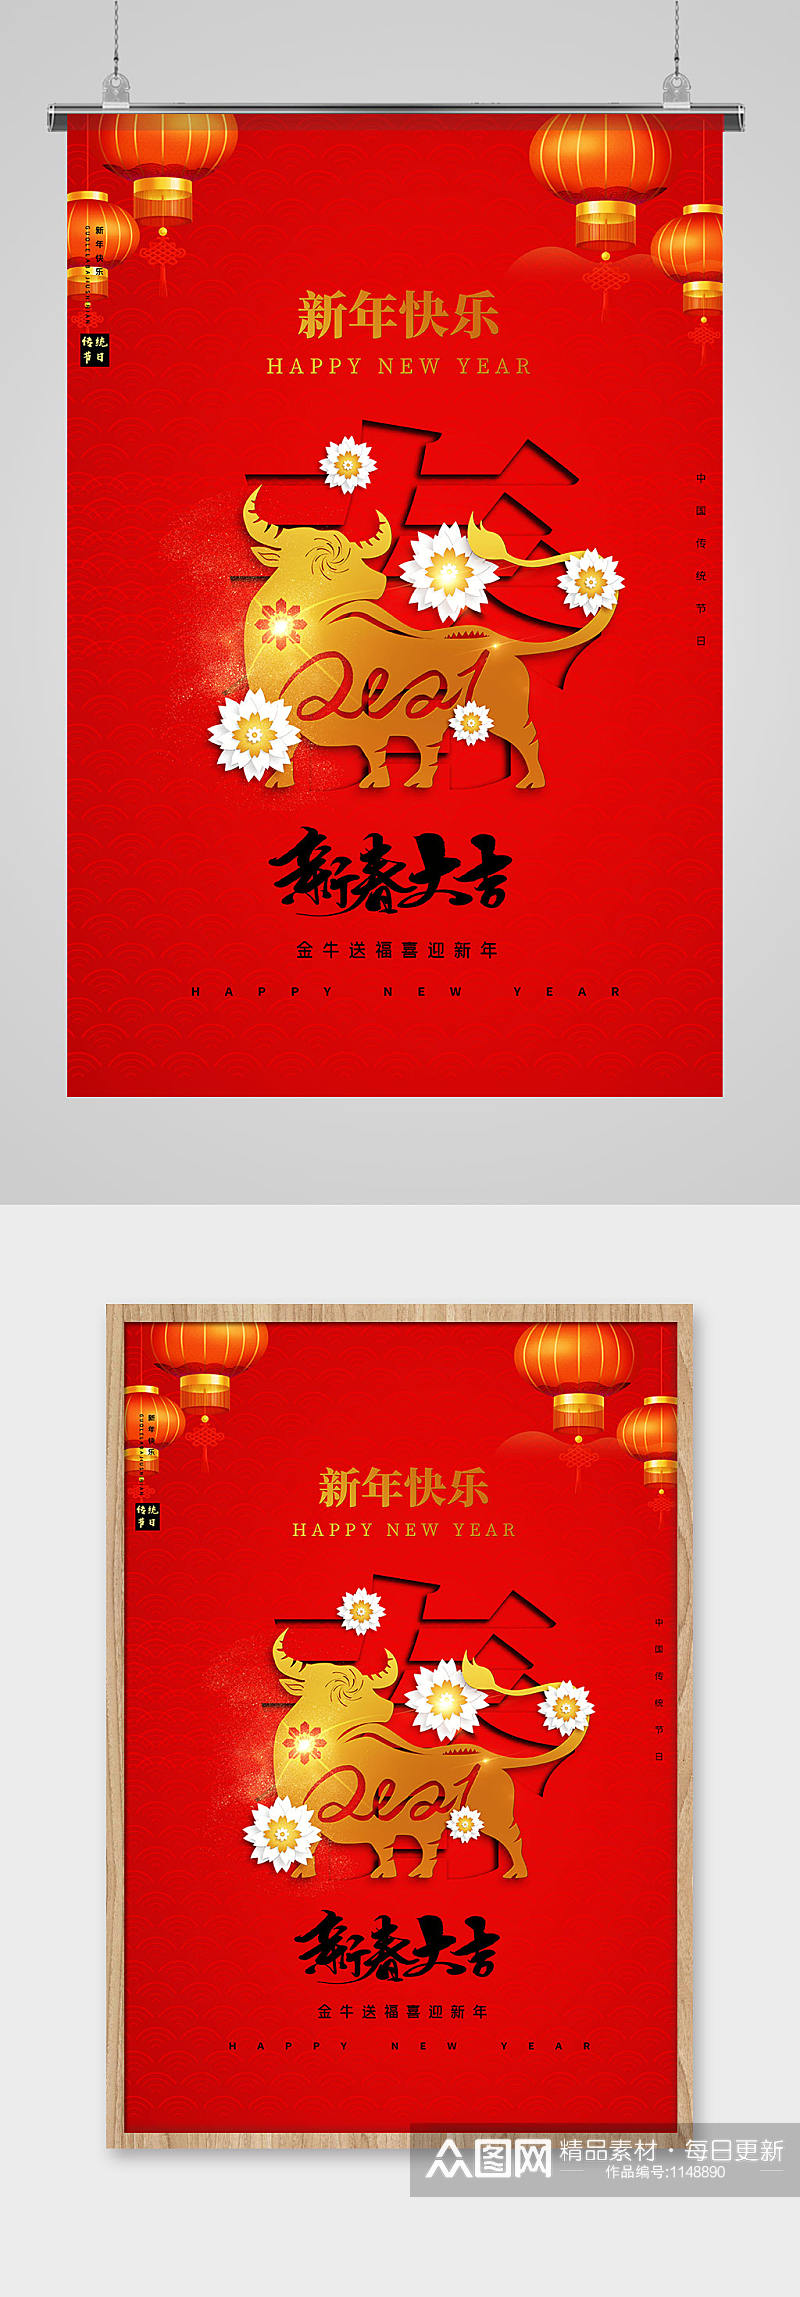 大气红色创意剪纸风新春大吉新年海报素材